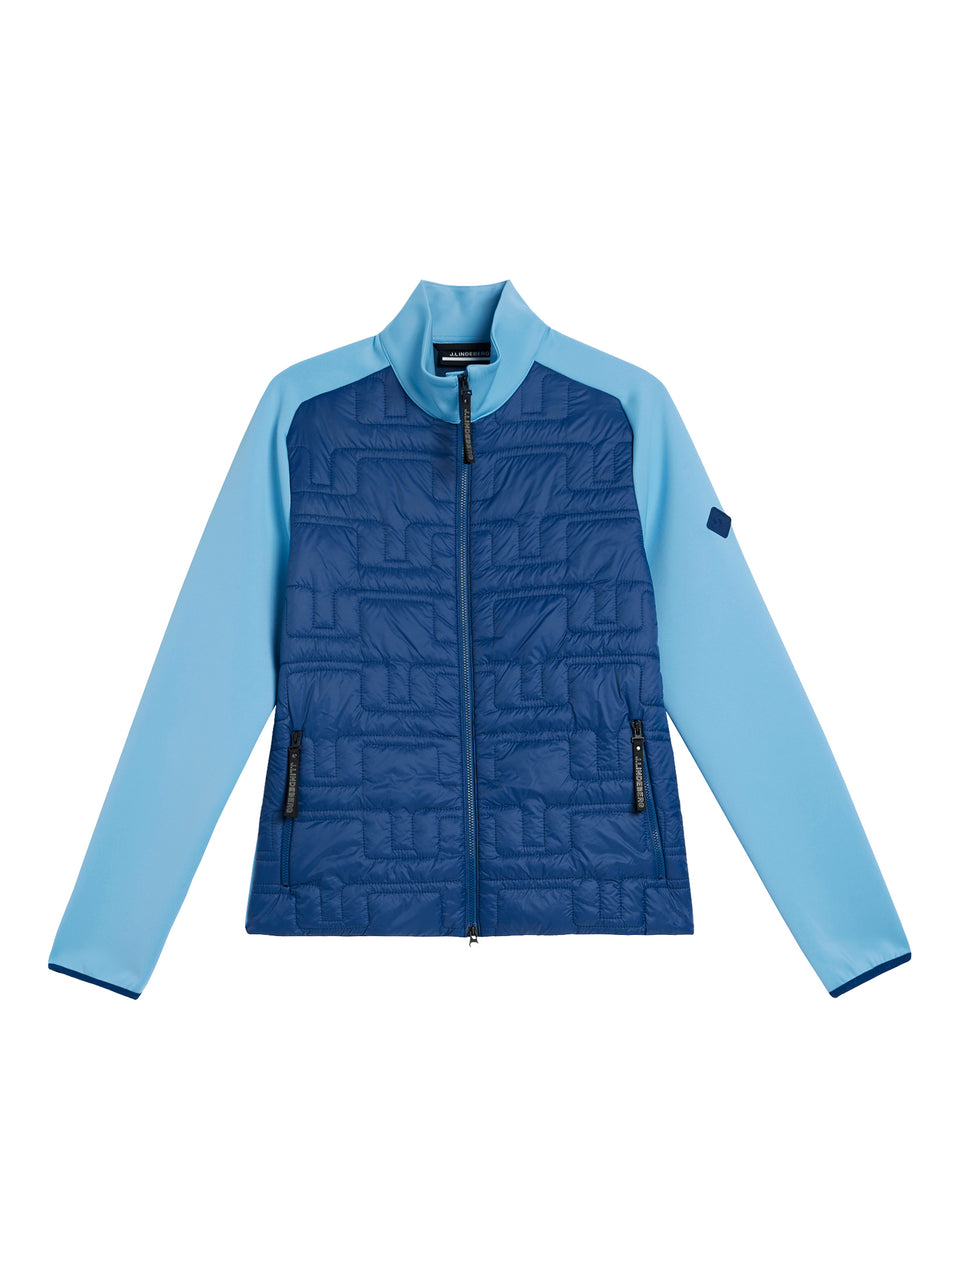 W Quilt Hybrid Jacket / Estate Blue